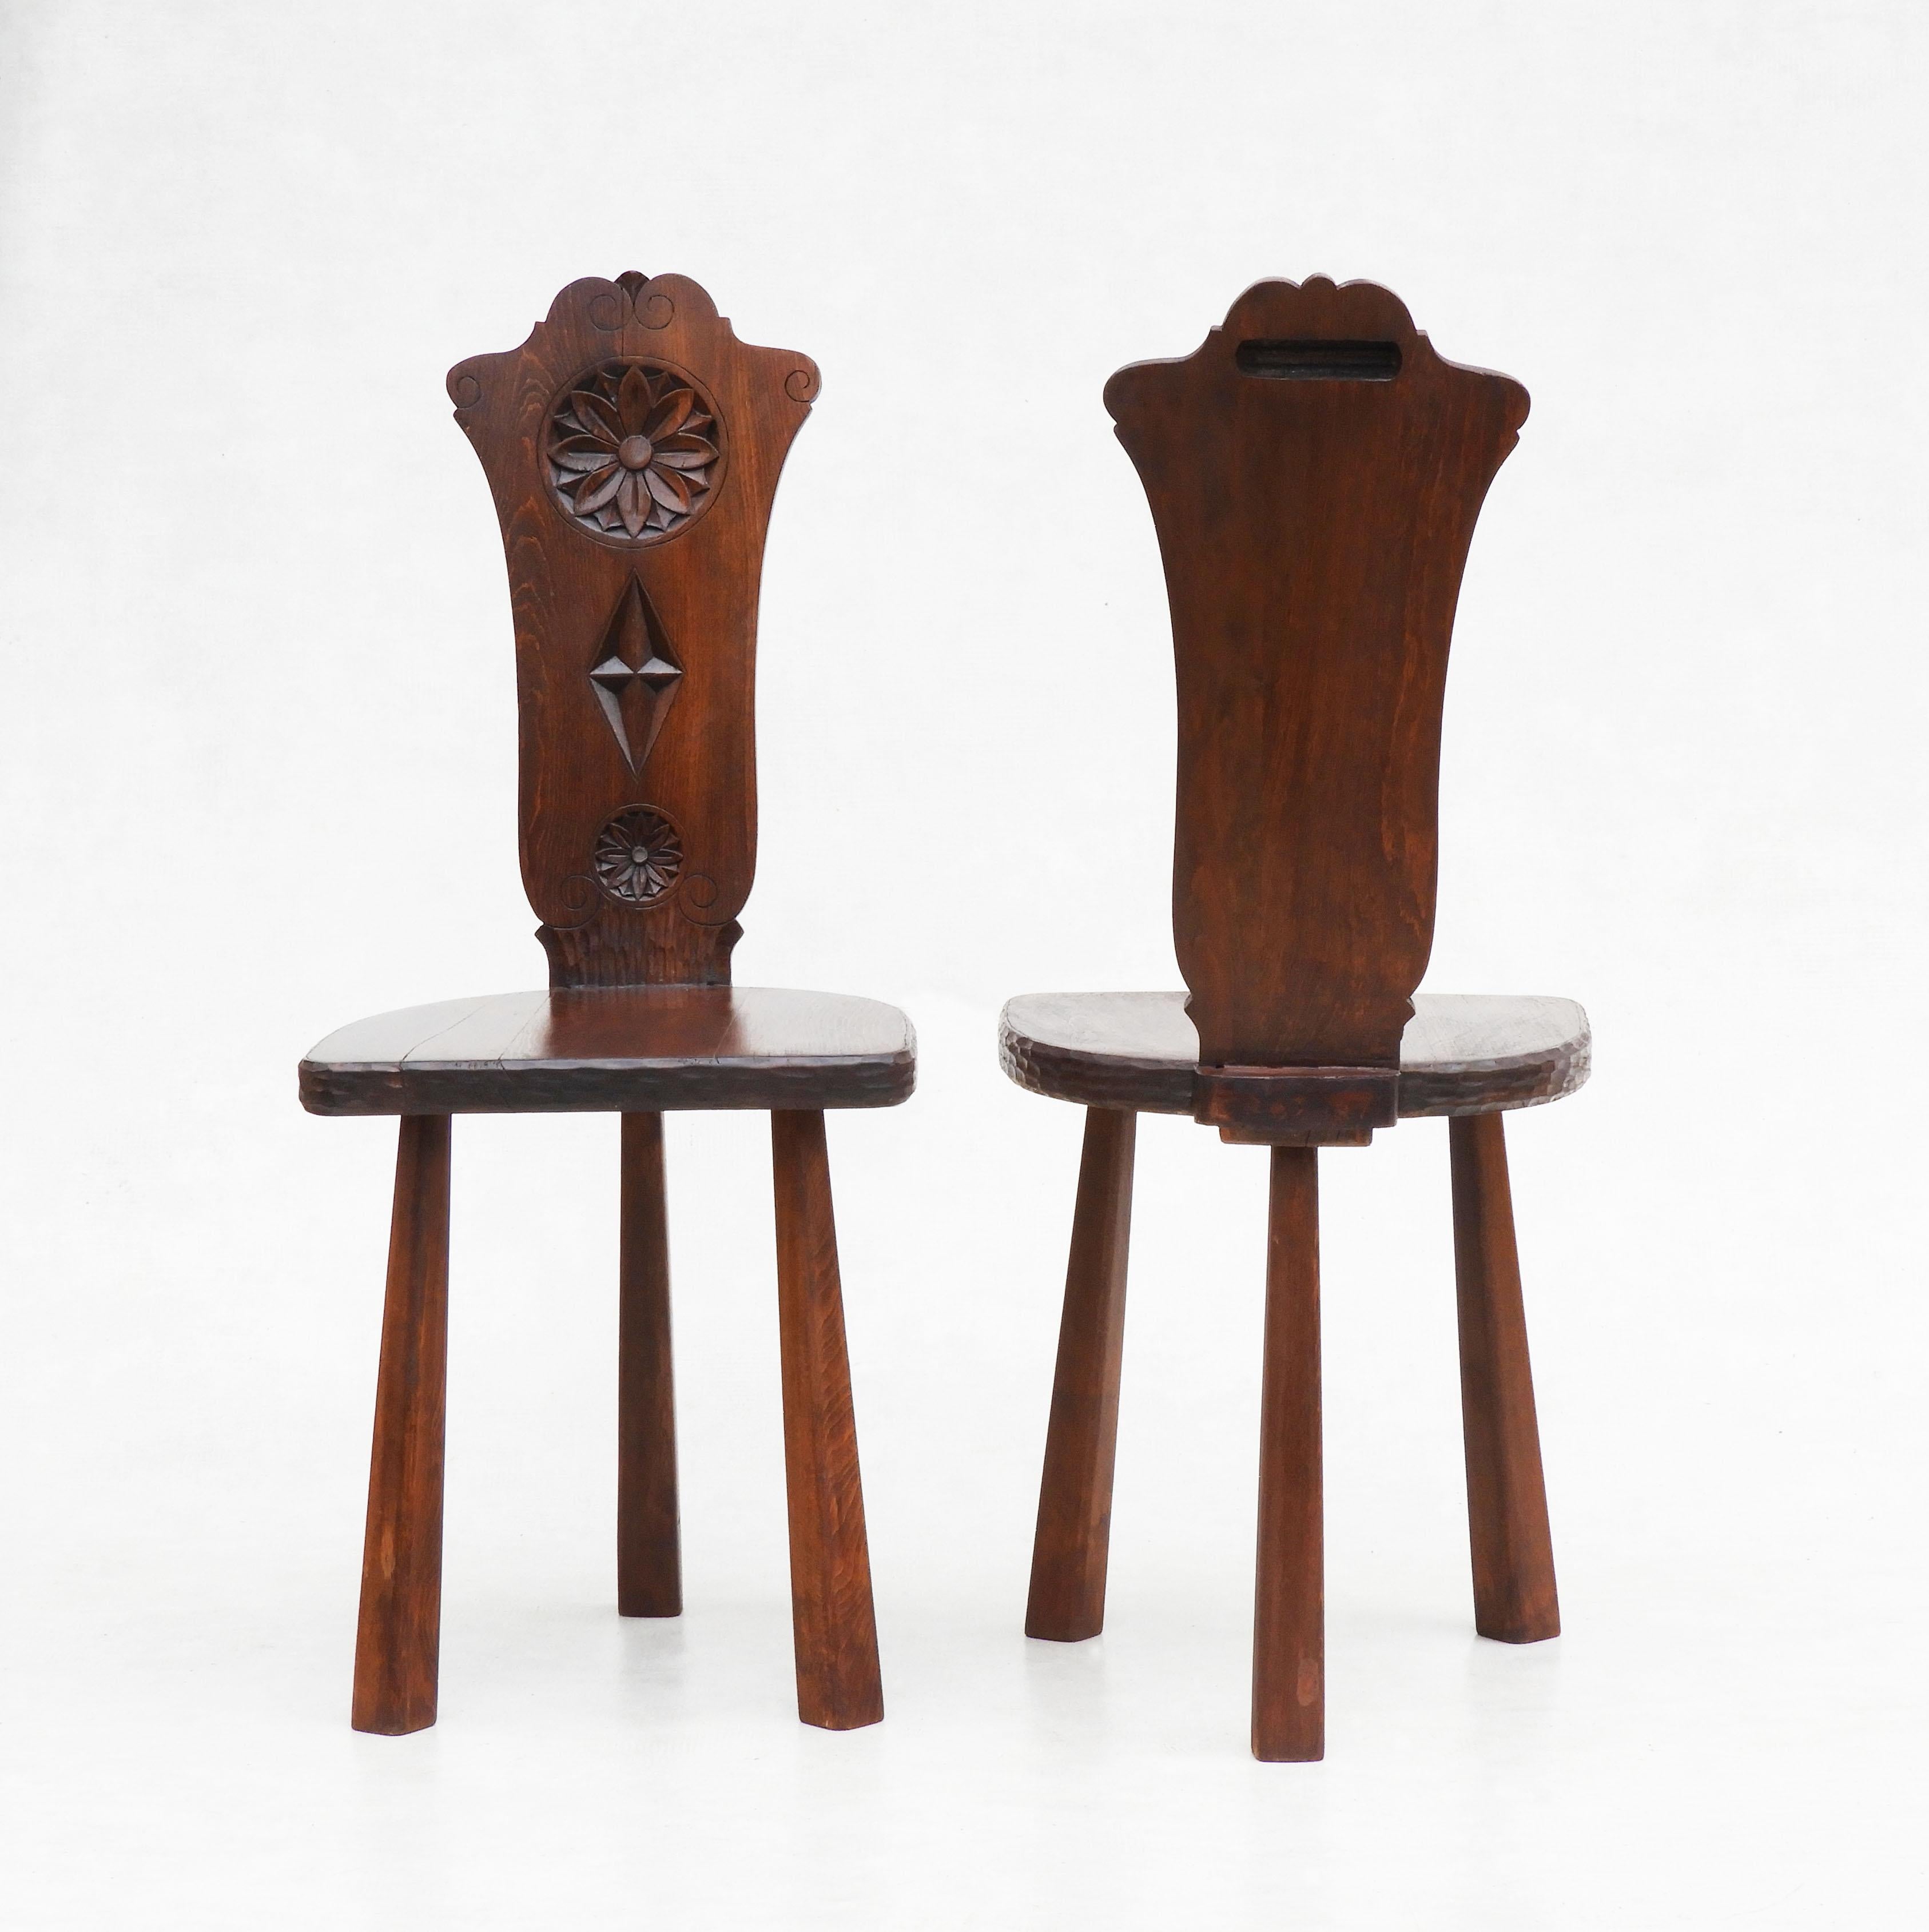 Pair of Basque Tripod Chairs 1950s European Folk Art For Sale 1